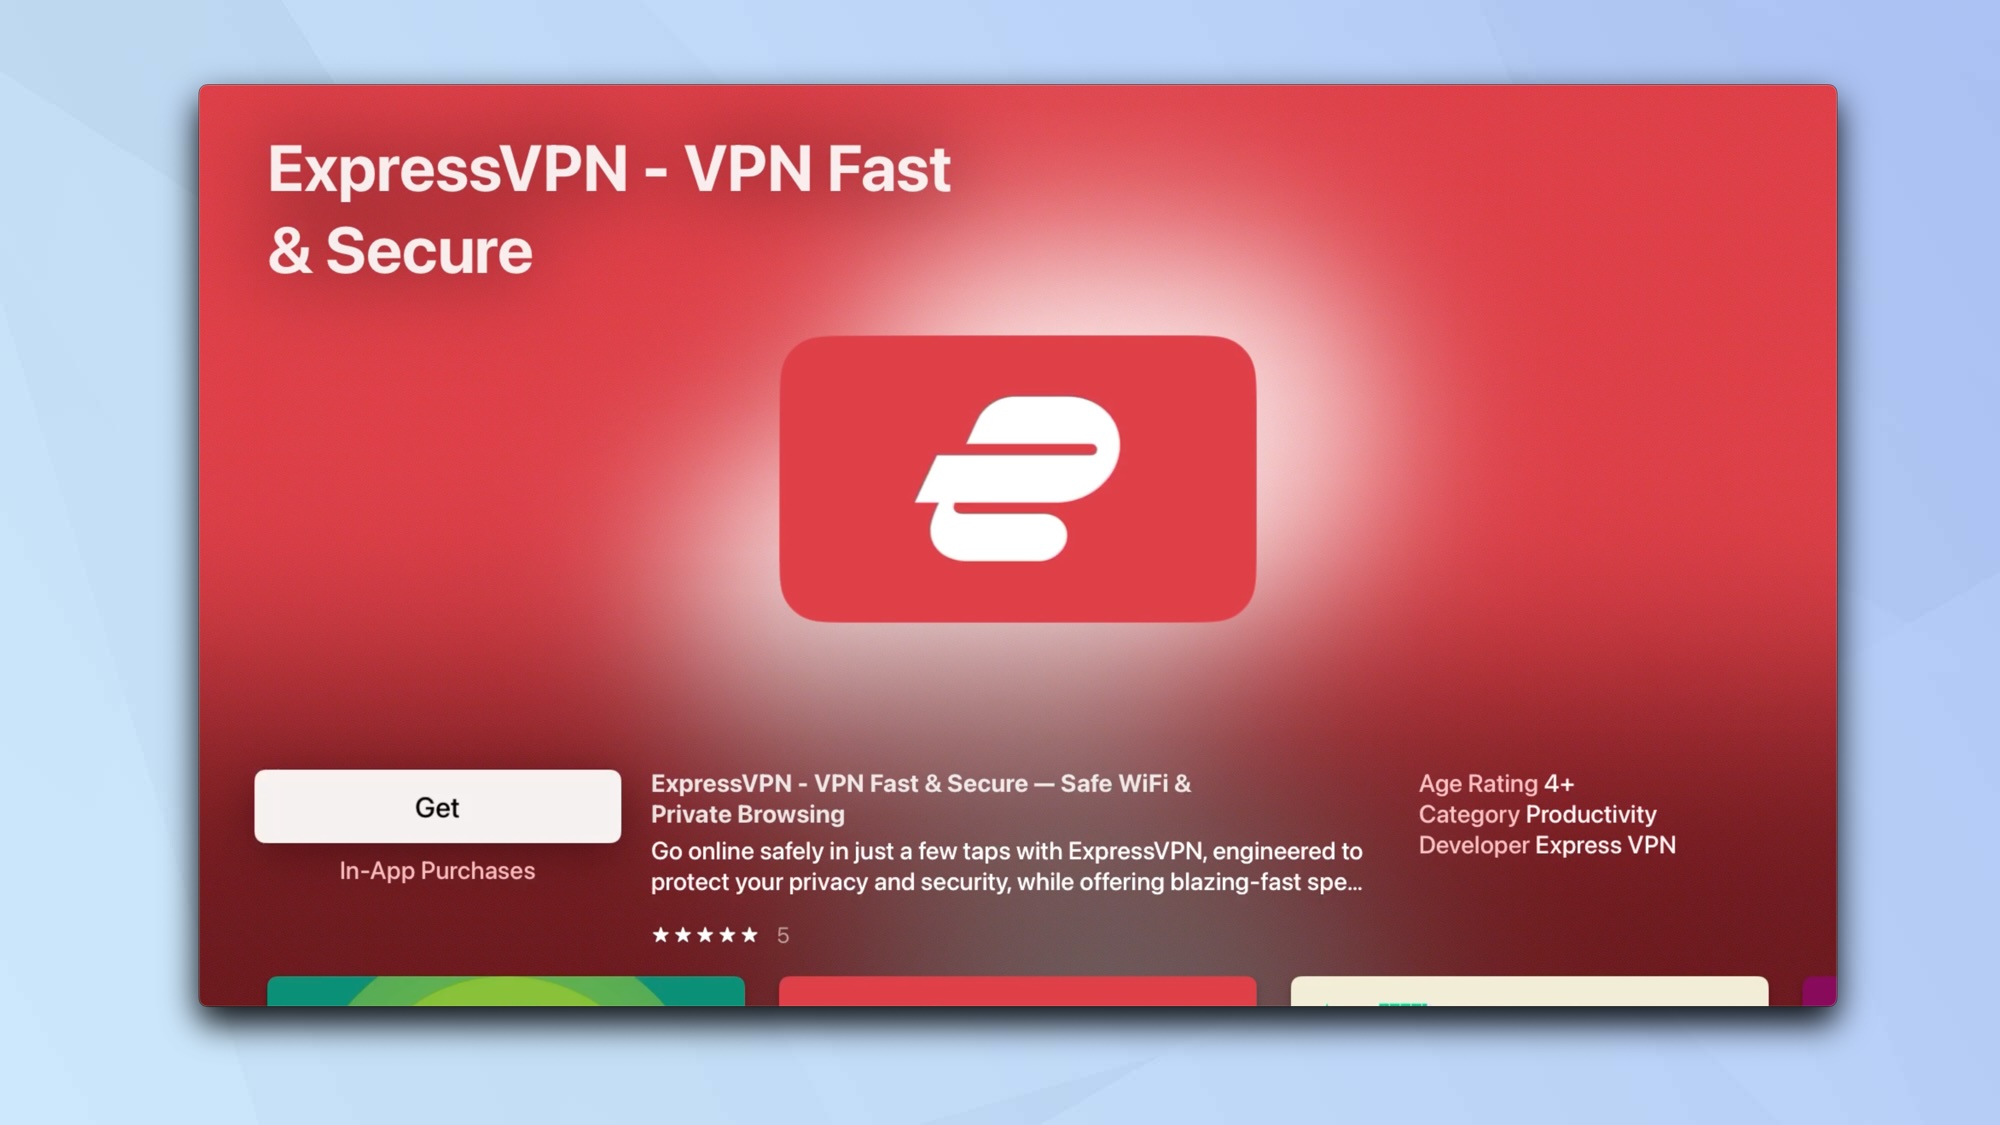 Как настроить VPN на Apple TV